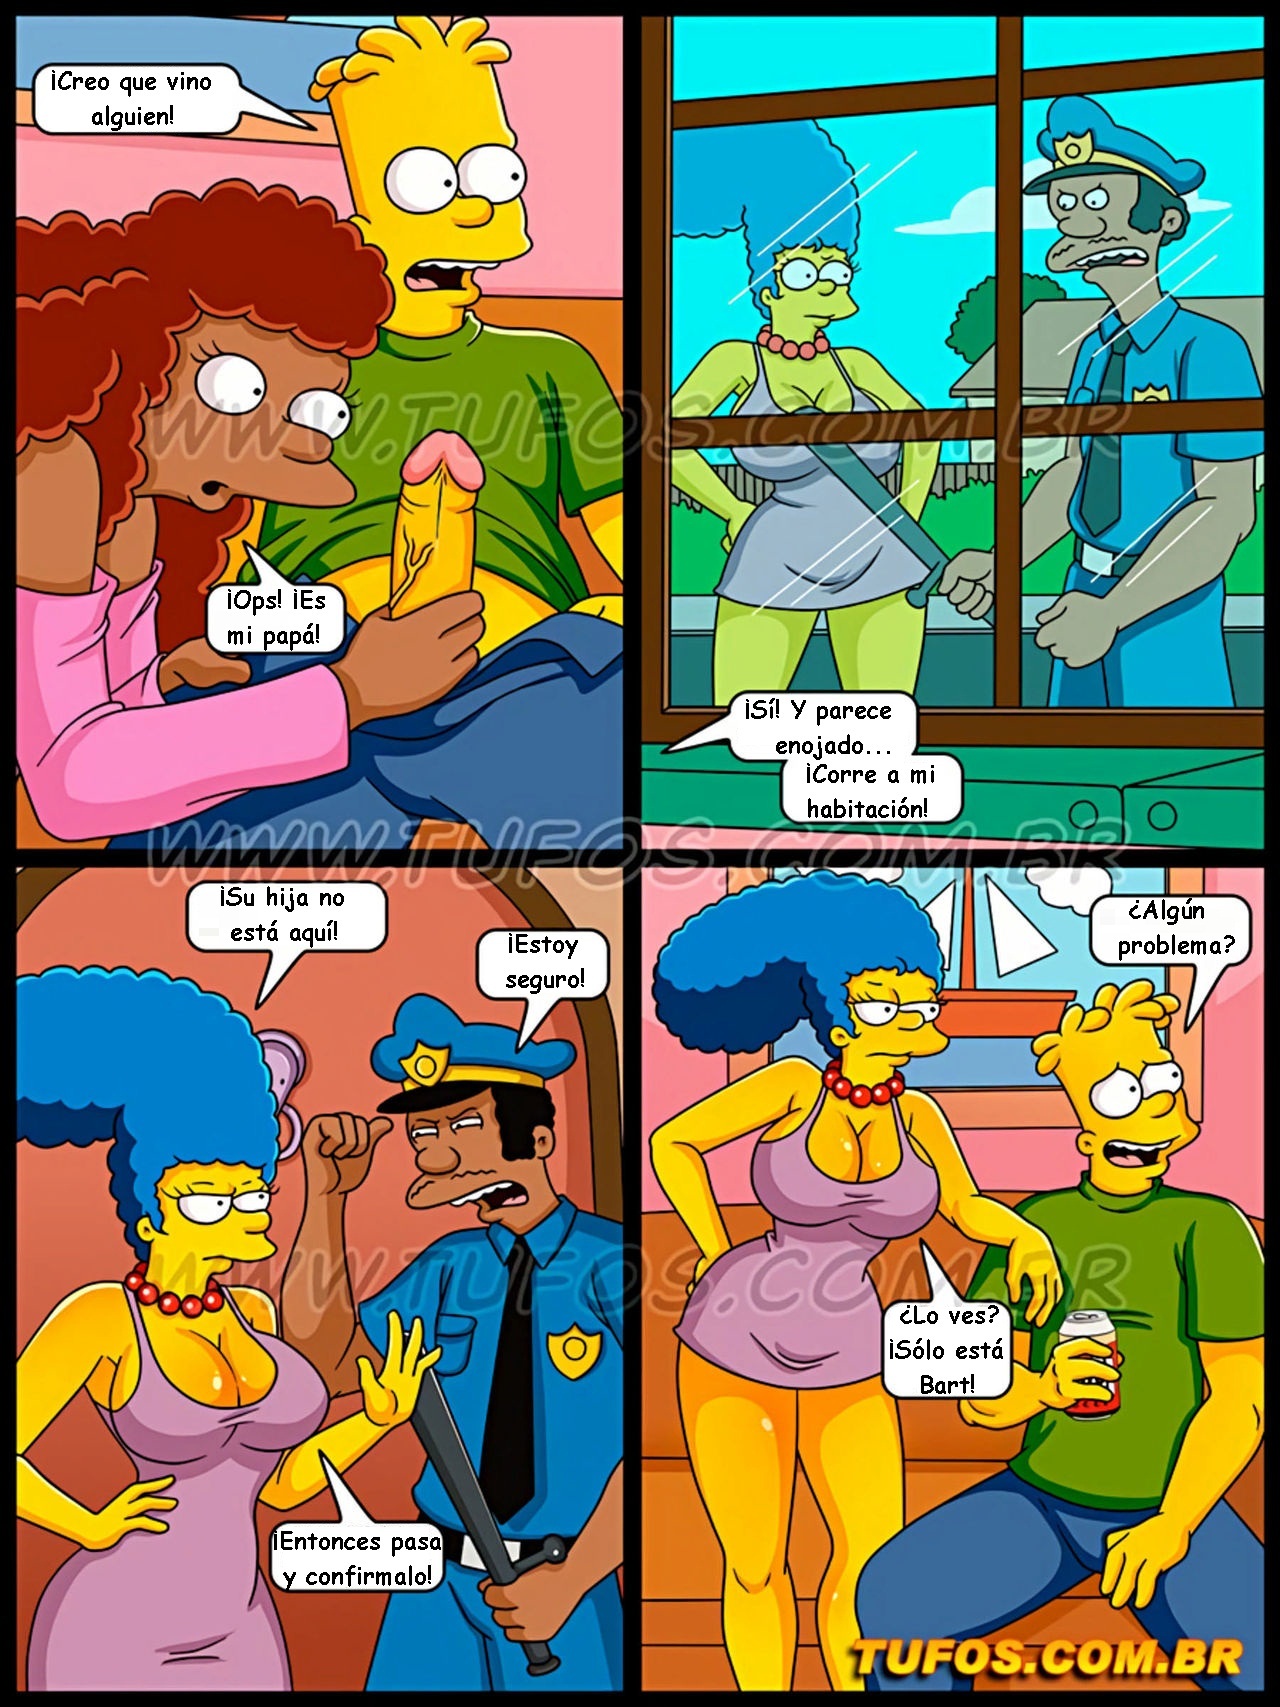 Simpsons xxx - Tomando la polla del policia